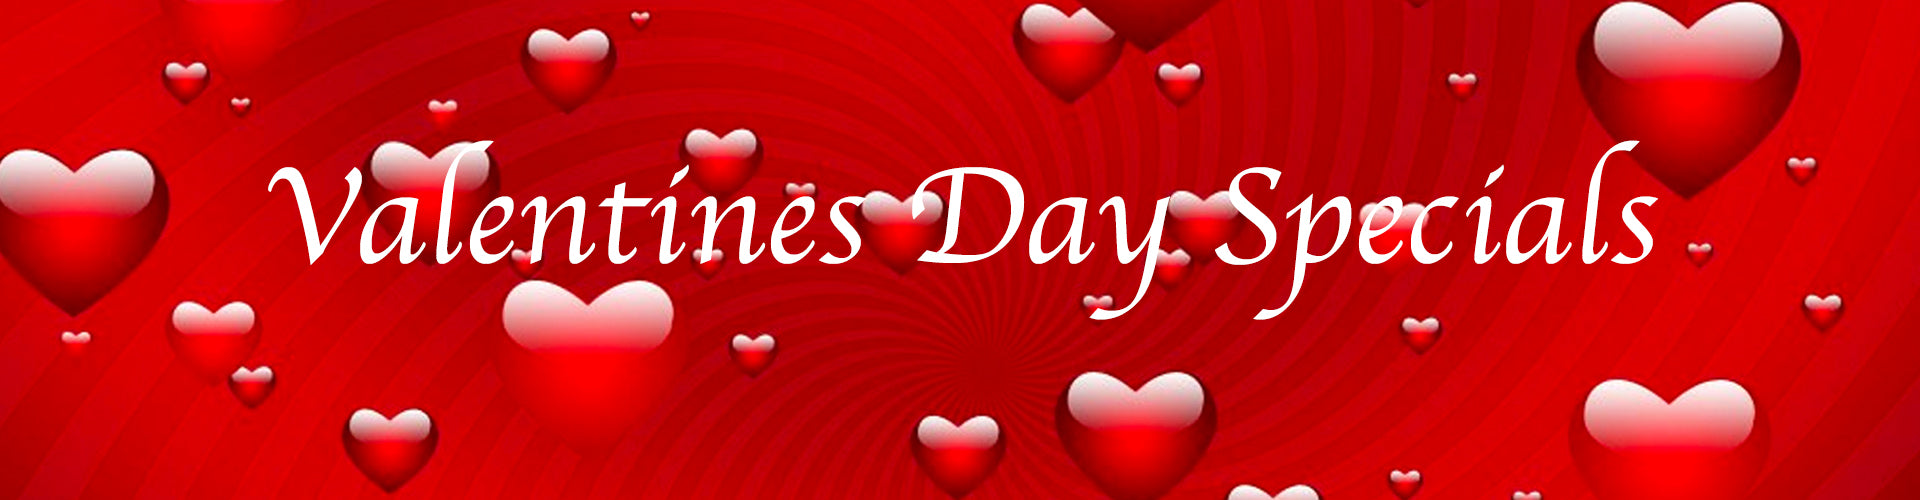 Valentines Day Specials Banner